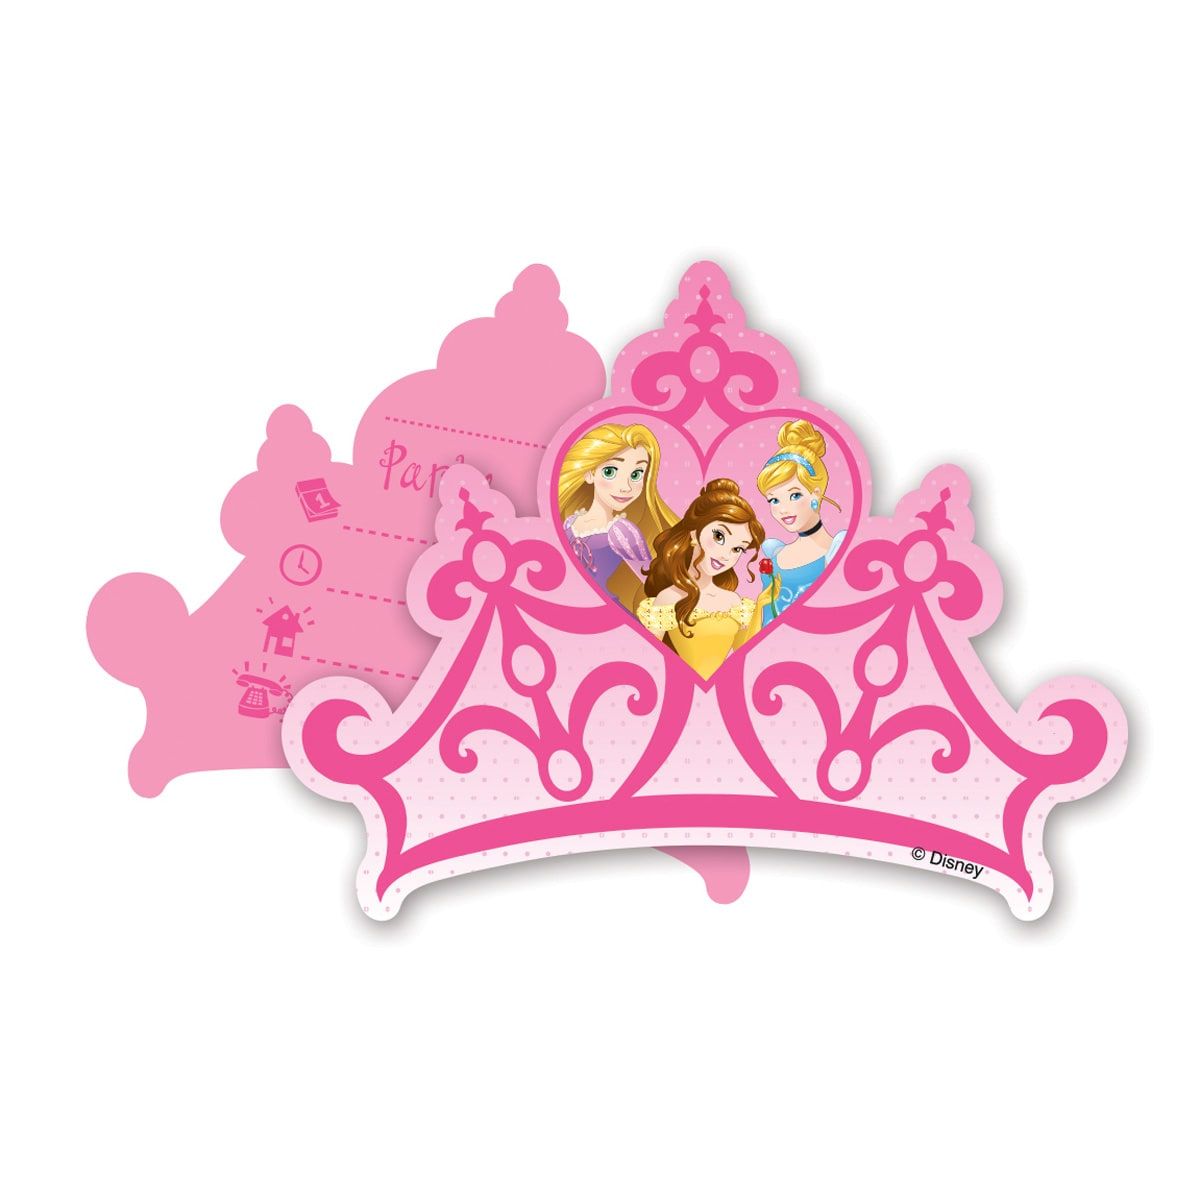 Disney prinsessen verjaardag uitnodigingen 6 stuks